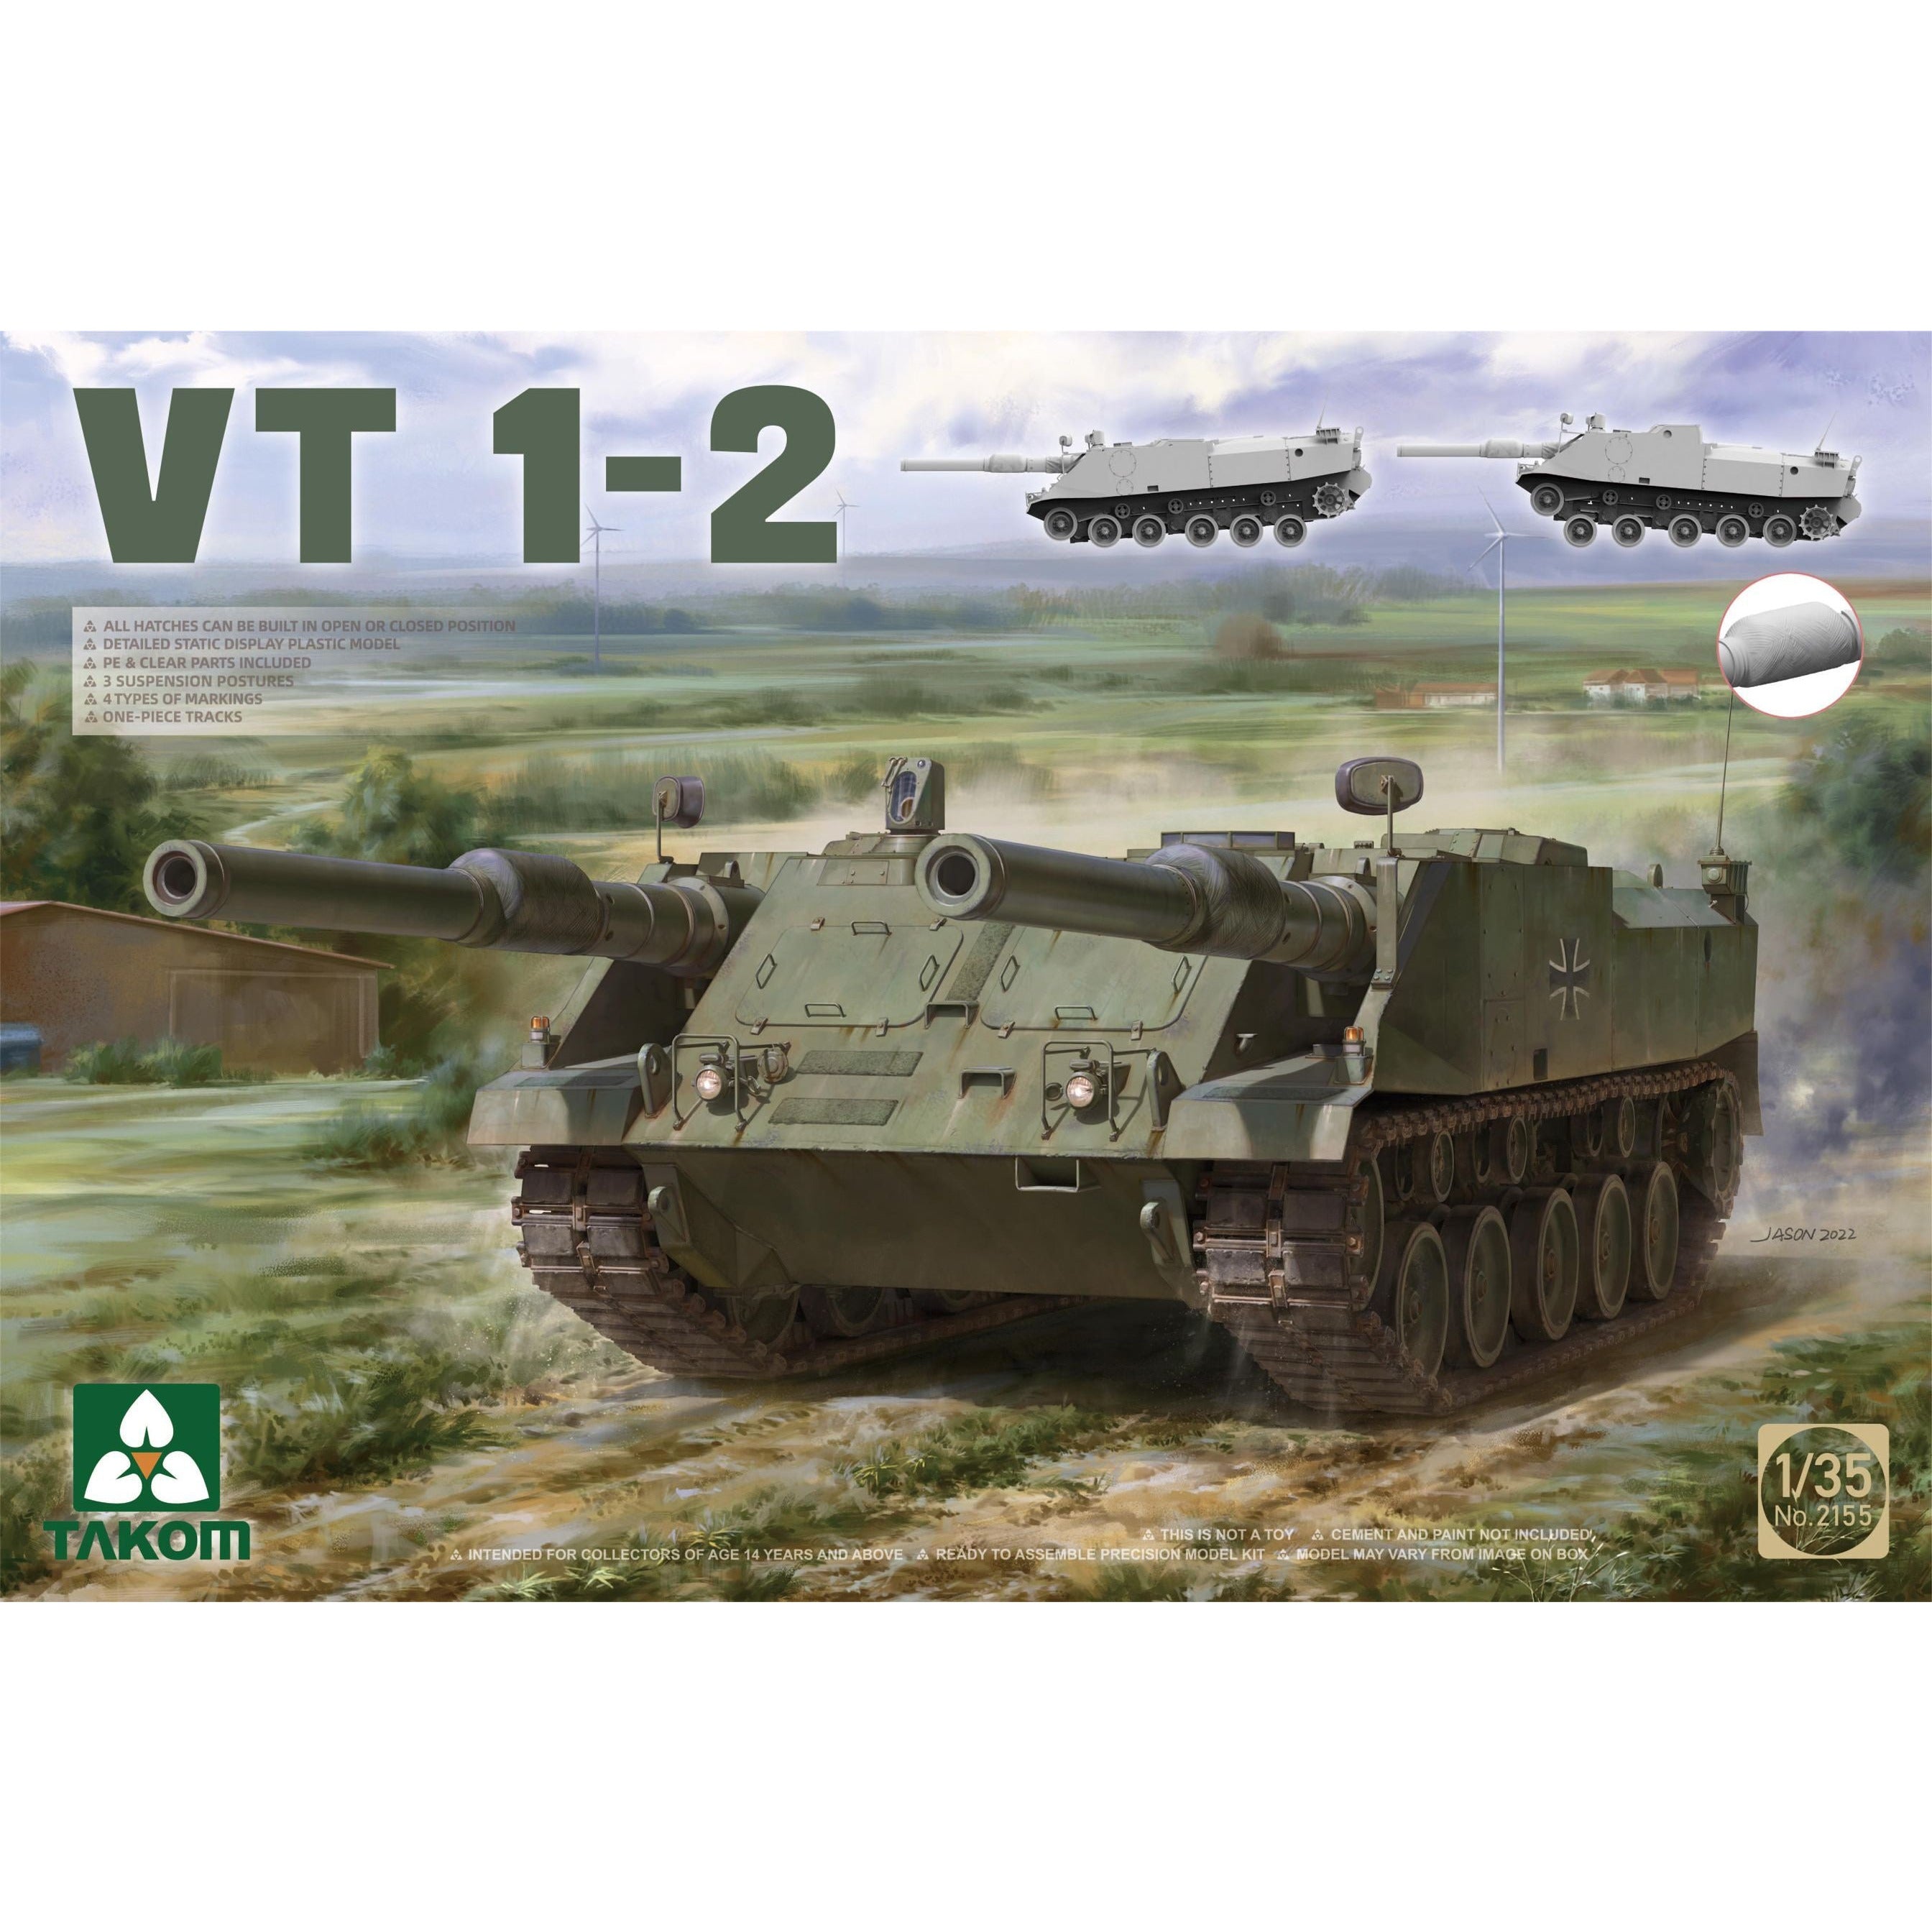 VT 1-2 Tank 1/35 #2155 by Takom